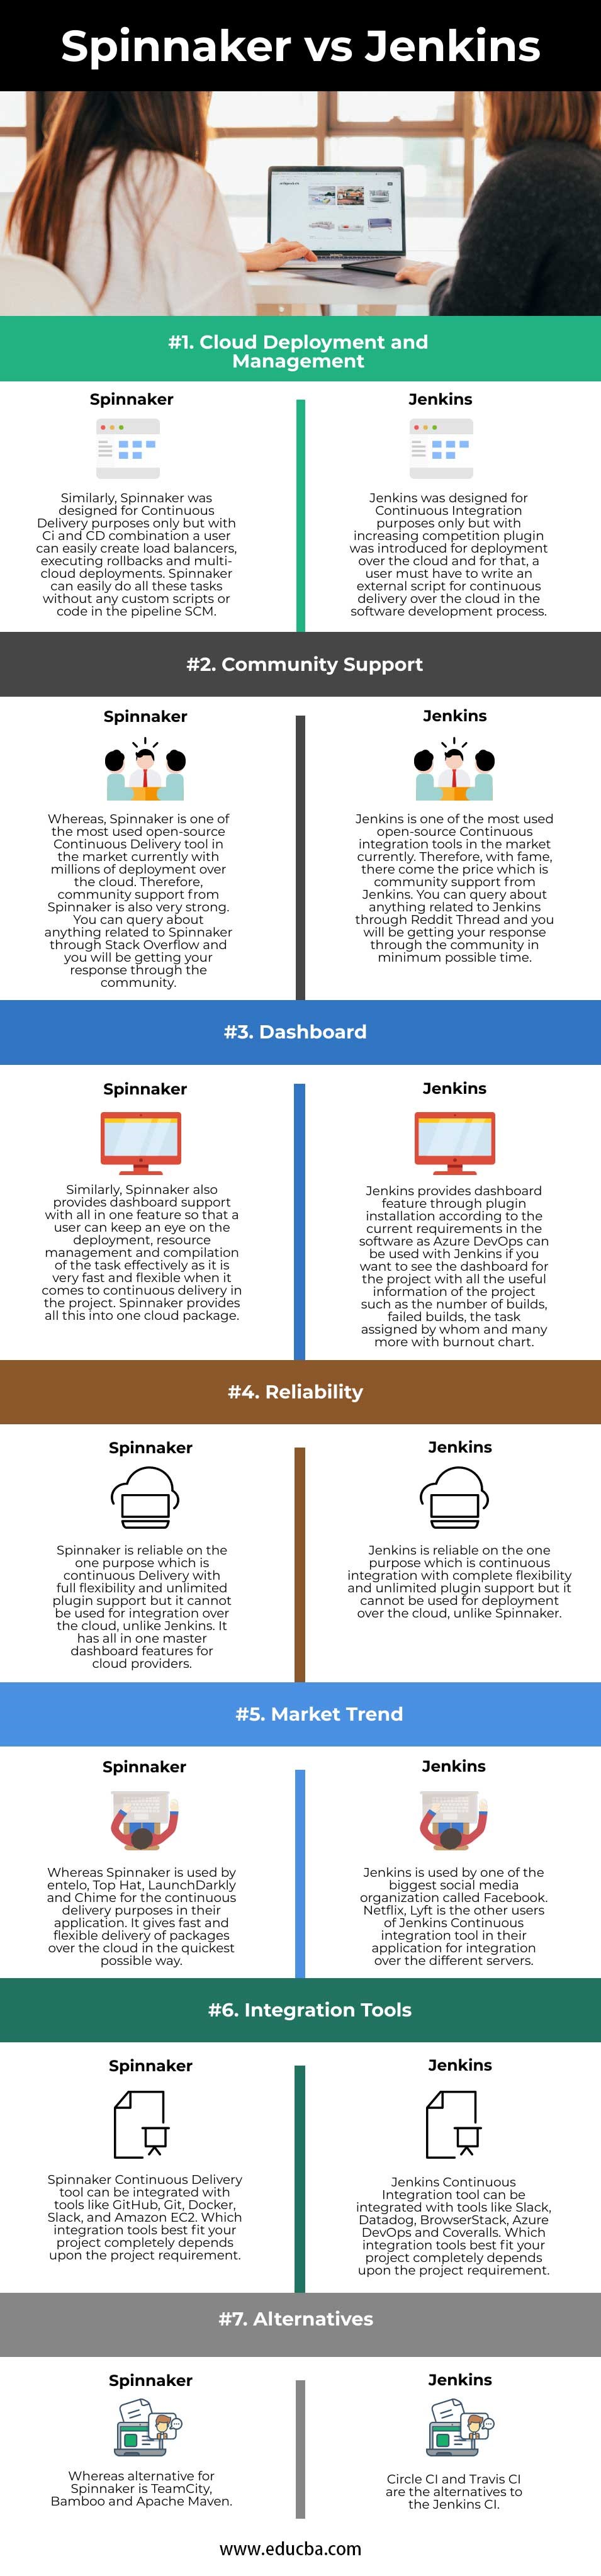 Spinnaker-vs-Jenkins-info